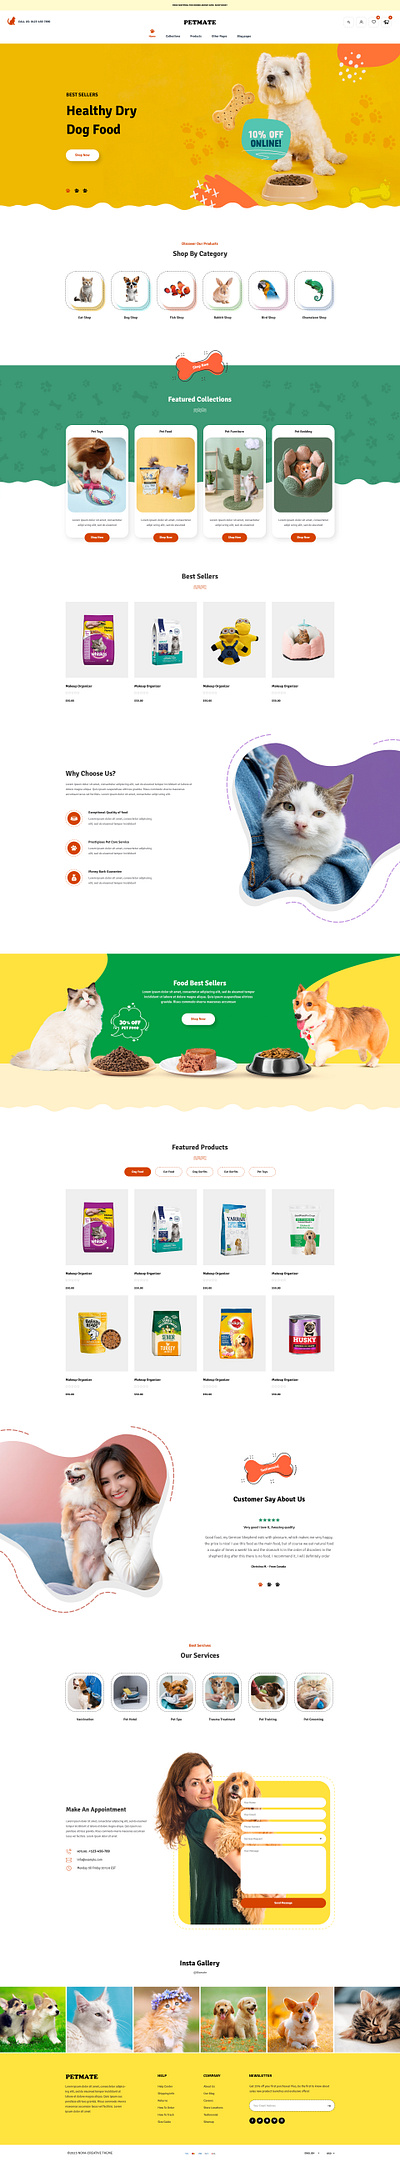 Mate - Pet Shop & Pet Care Shopify Theme design dropshipping shopify shopify store shopify template shopify theme ui web design website design